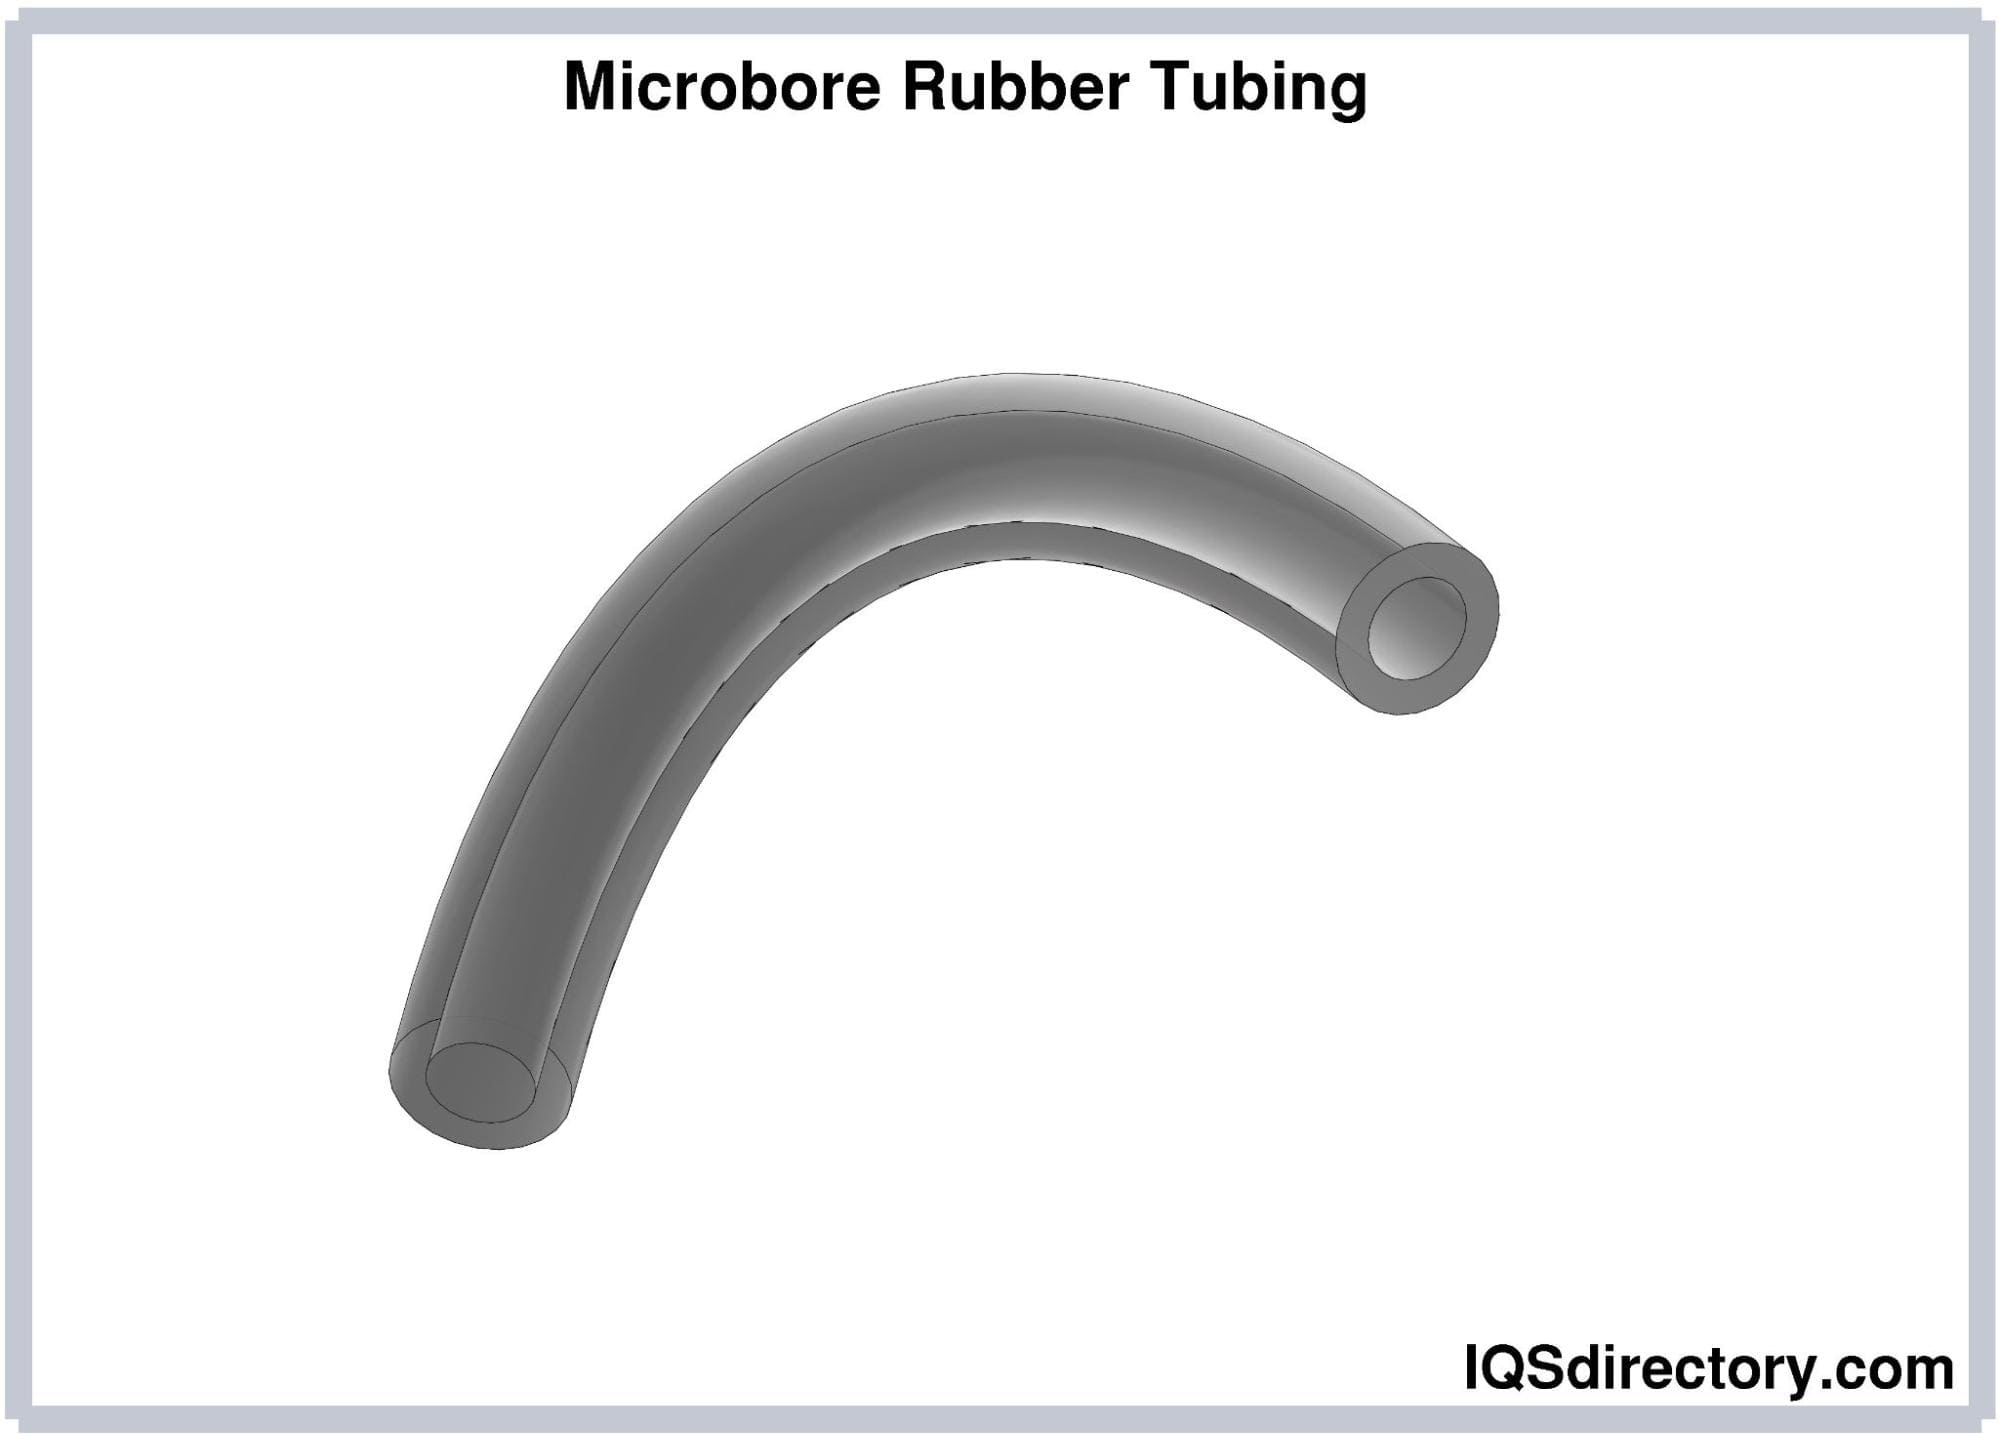 Microbore Rubber Tubing